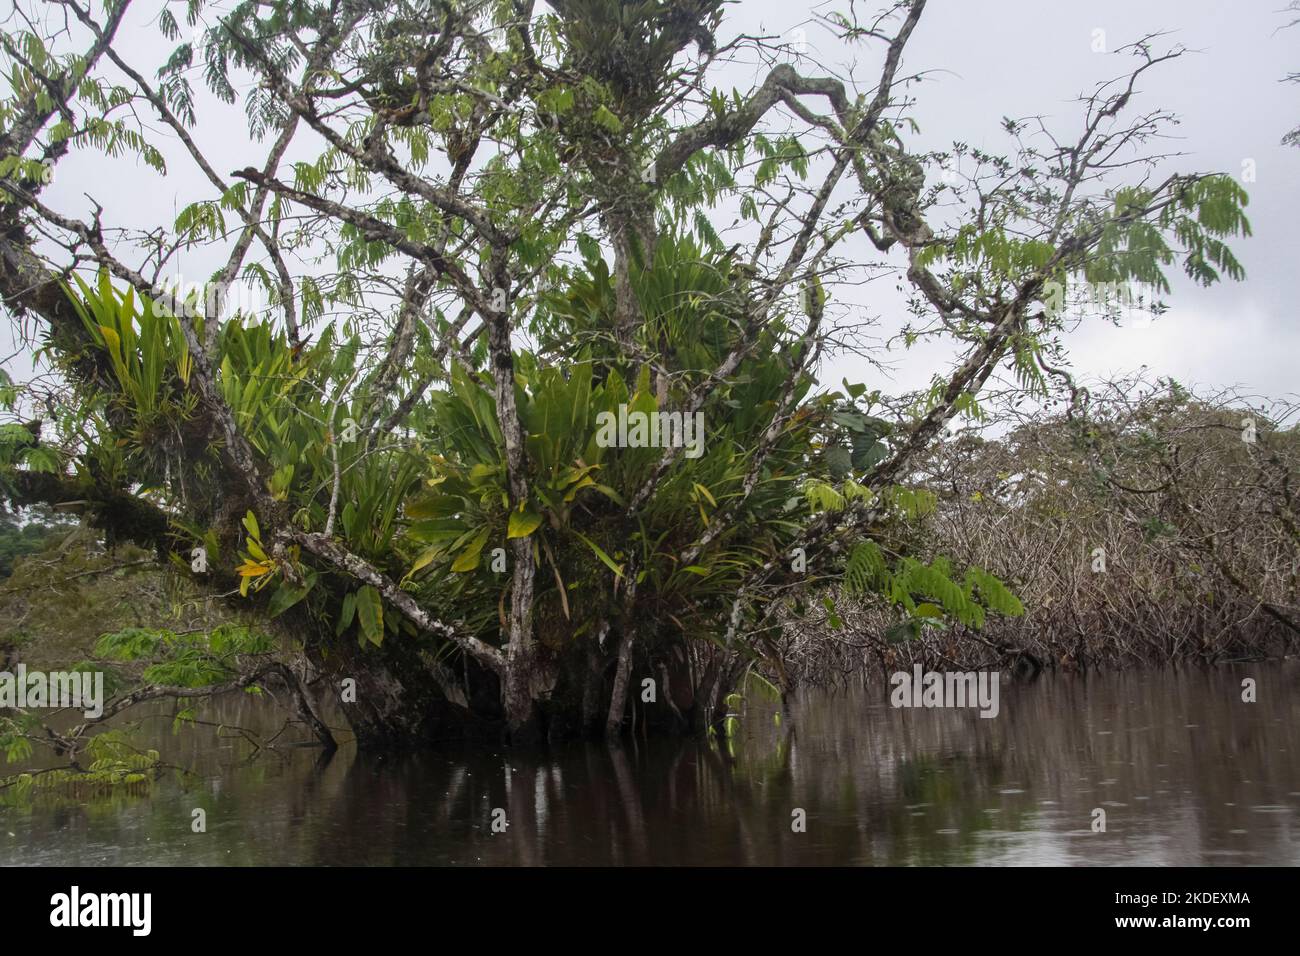 Un grand arbre dans la forêt équatoriale amazonienne équatorienne photographié dans la réserve de Cuyabeno en Équateur Banque D'Images